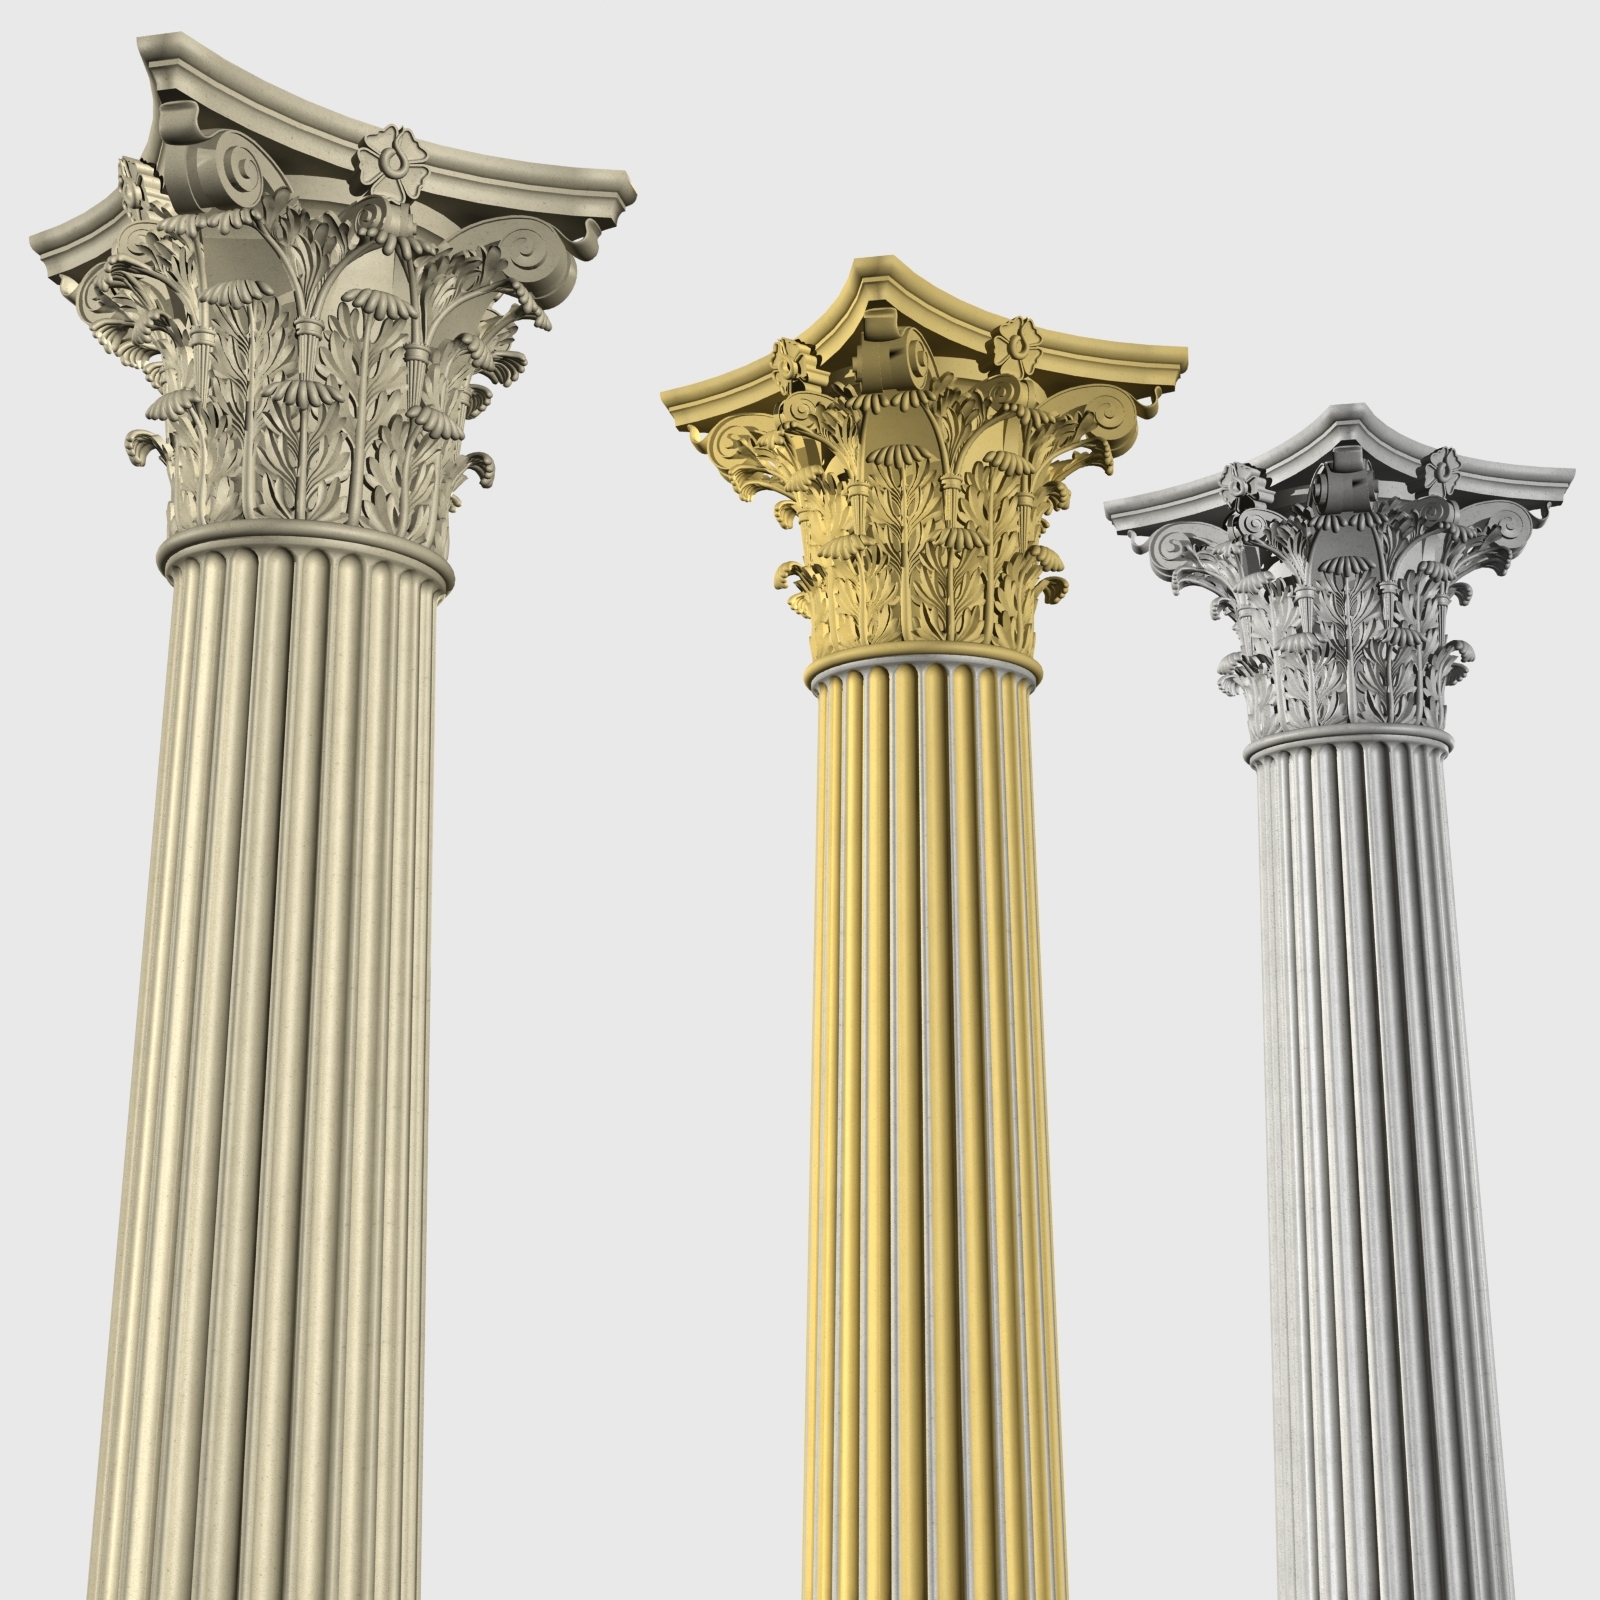 Three column. Коринфская колонна 3d модель. Коринф колонна 3д модель. Греческие колонны. Золотая колонна.